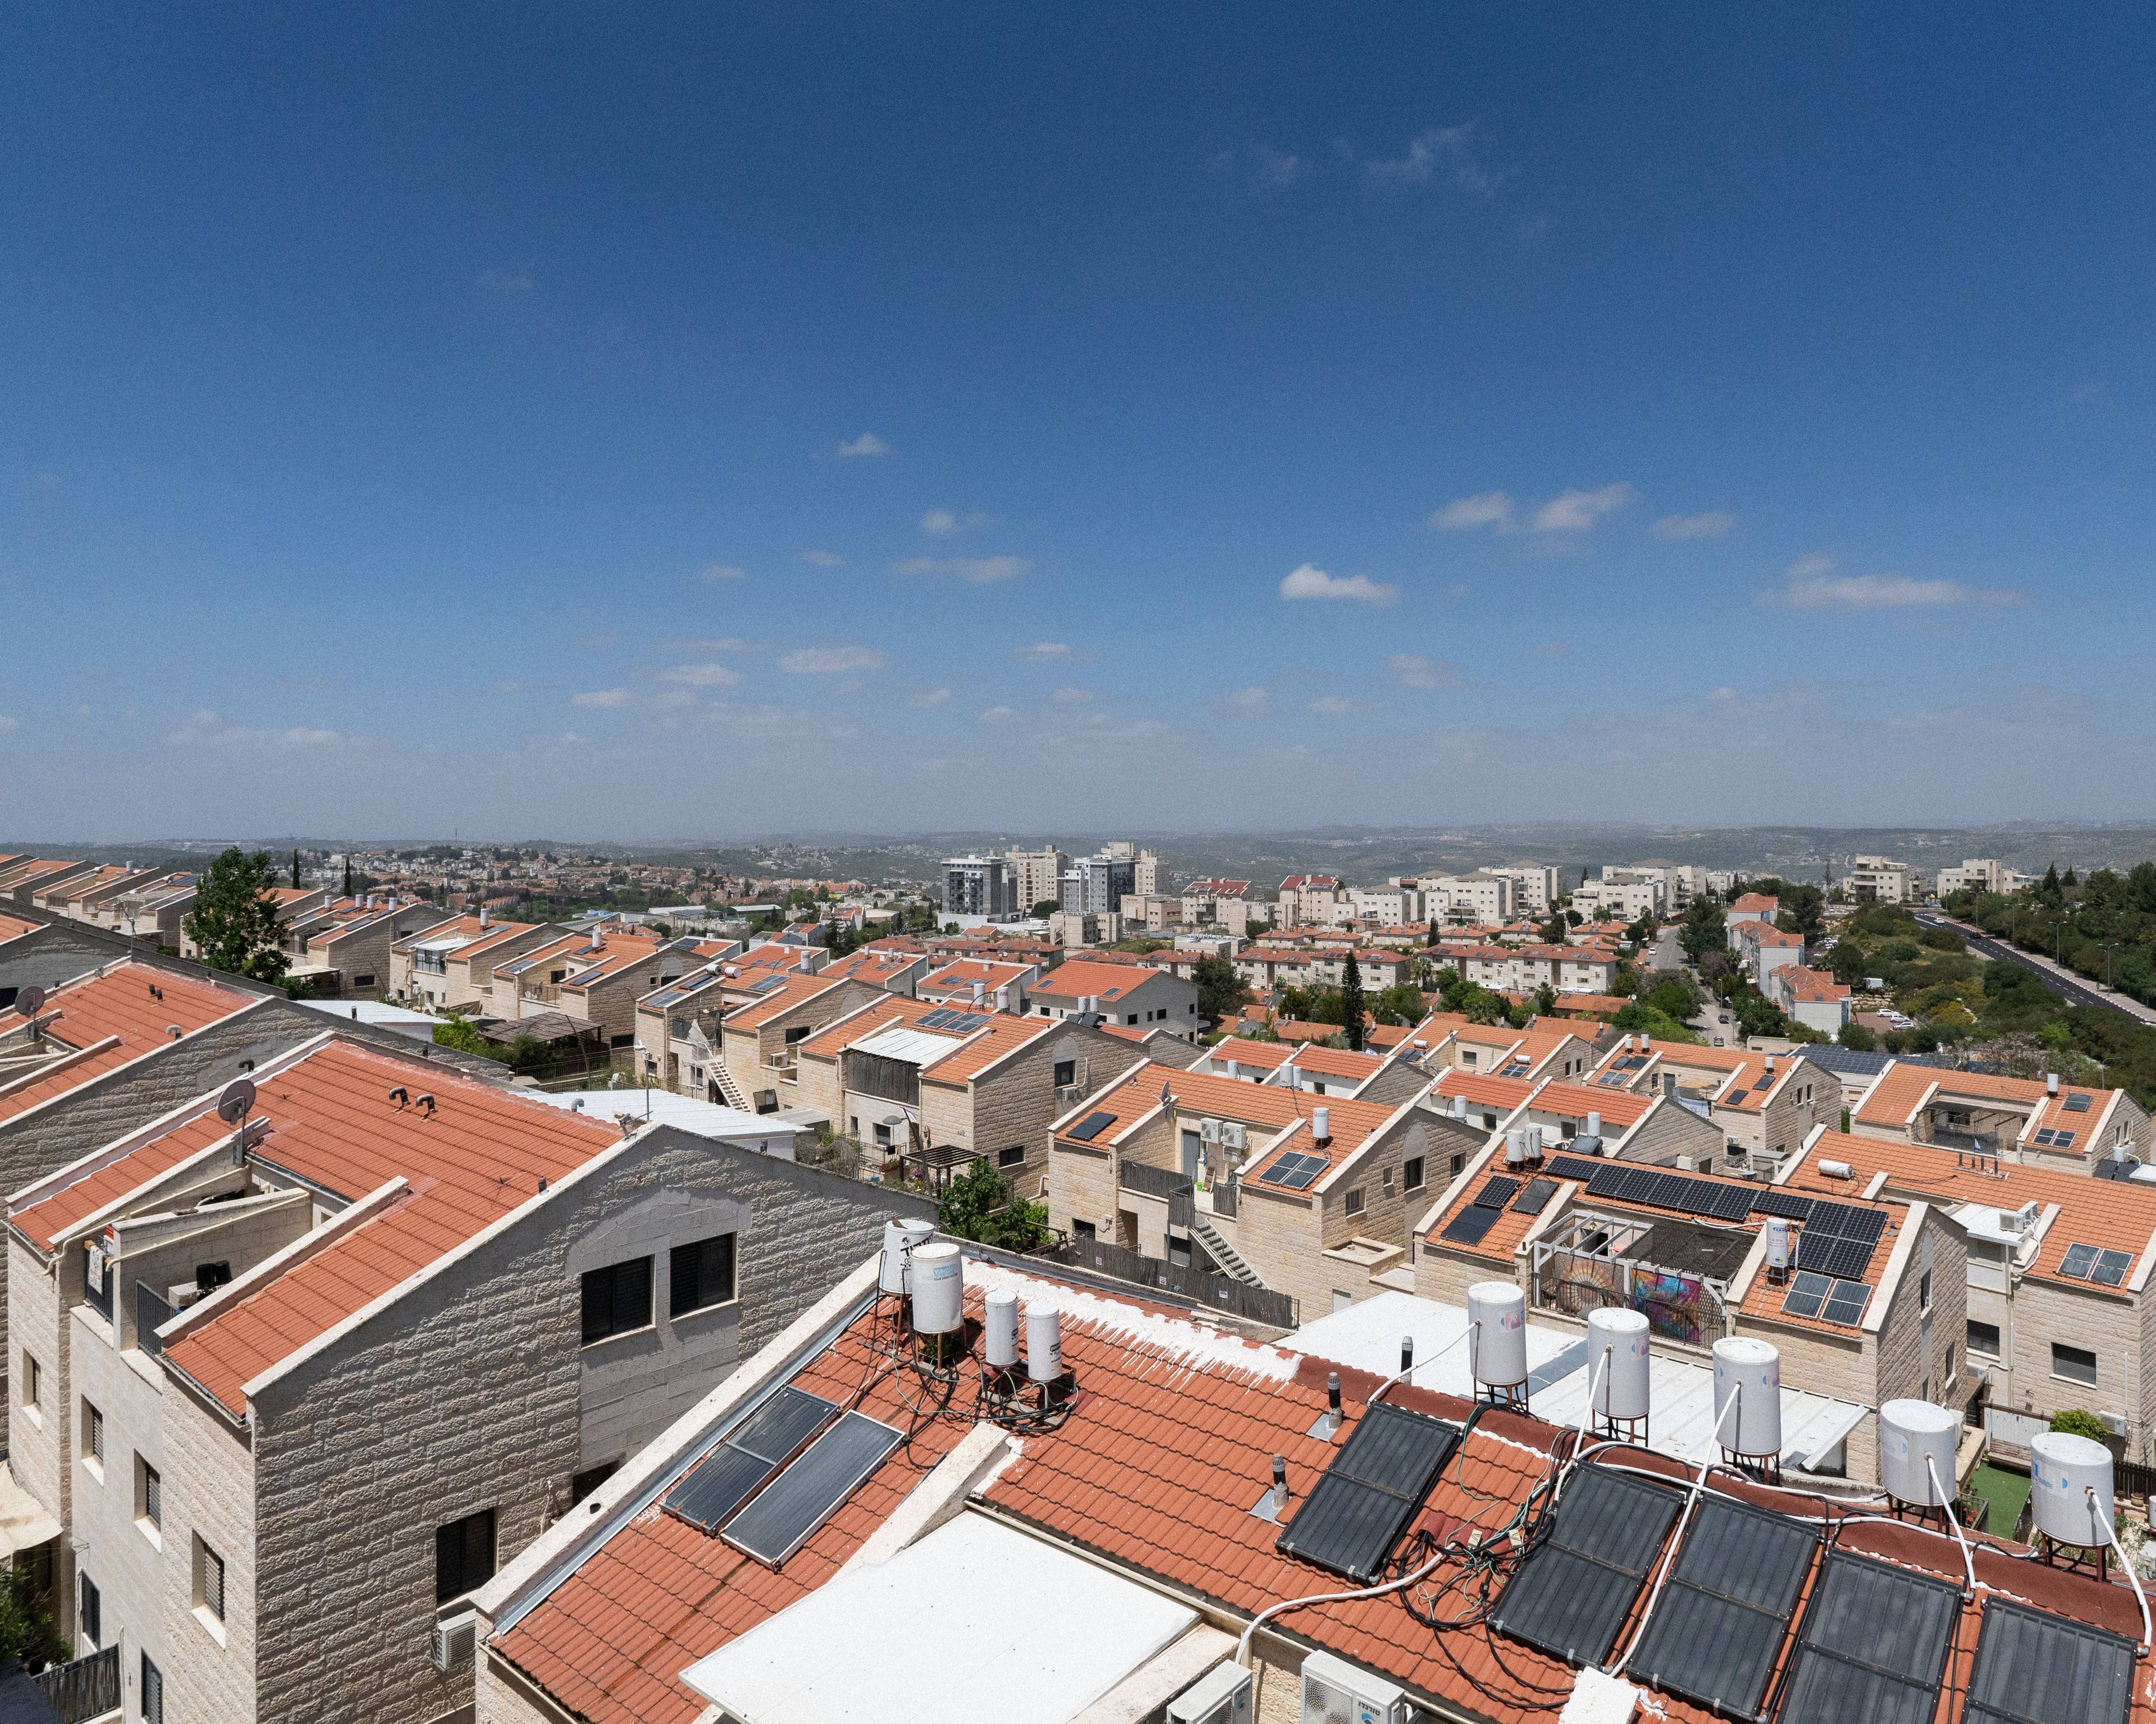 Widok na miasto i dachy budynków mieszkalnych